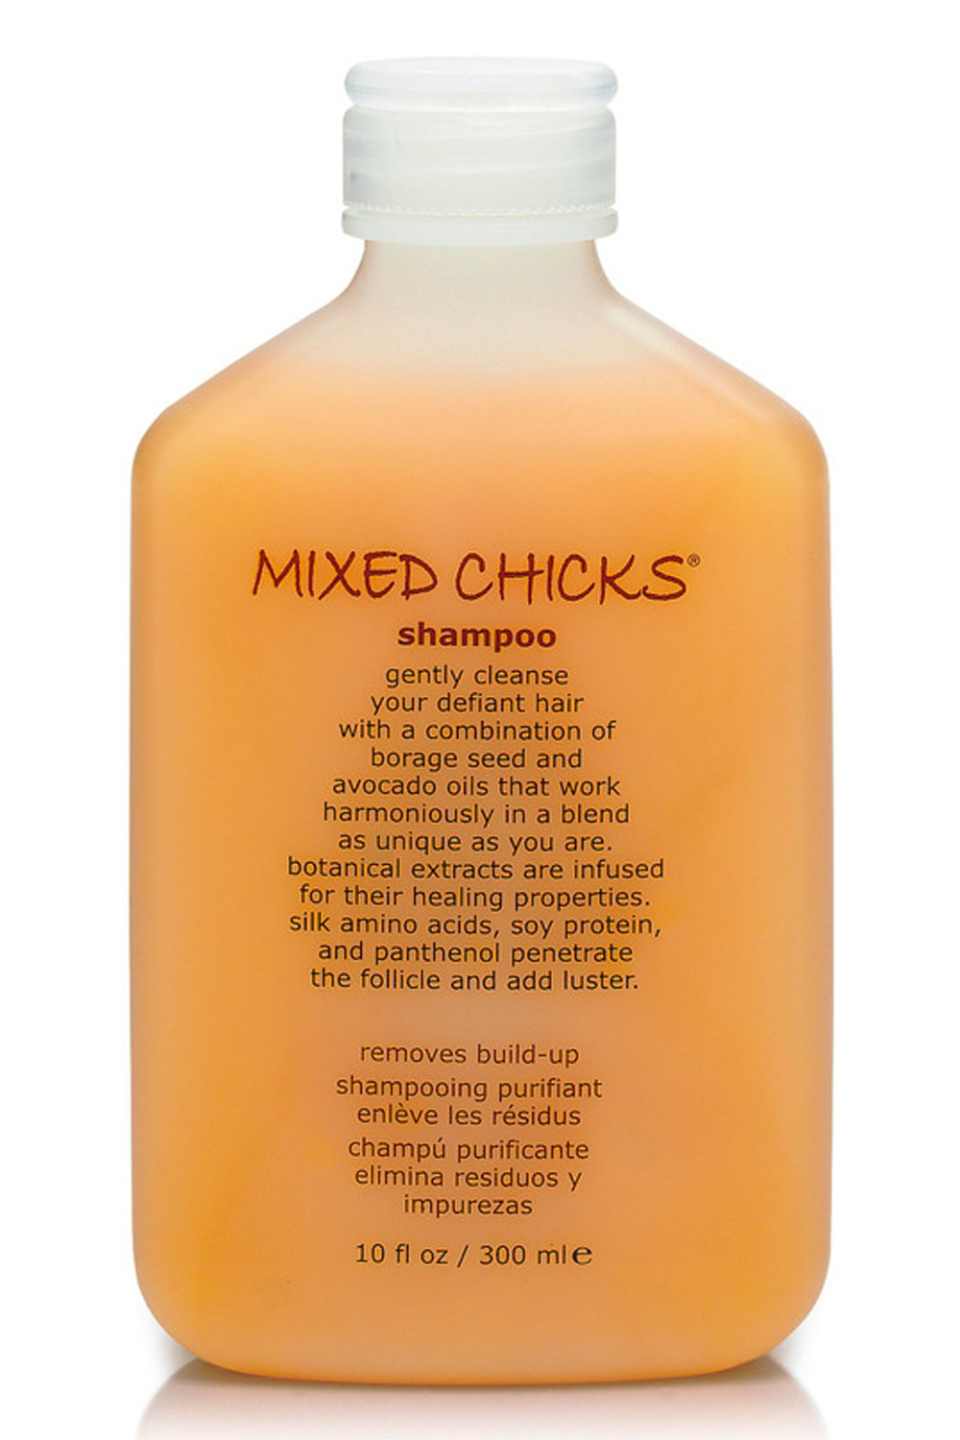 2) Mixed Chicks Shampoo